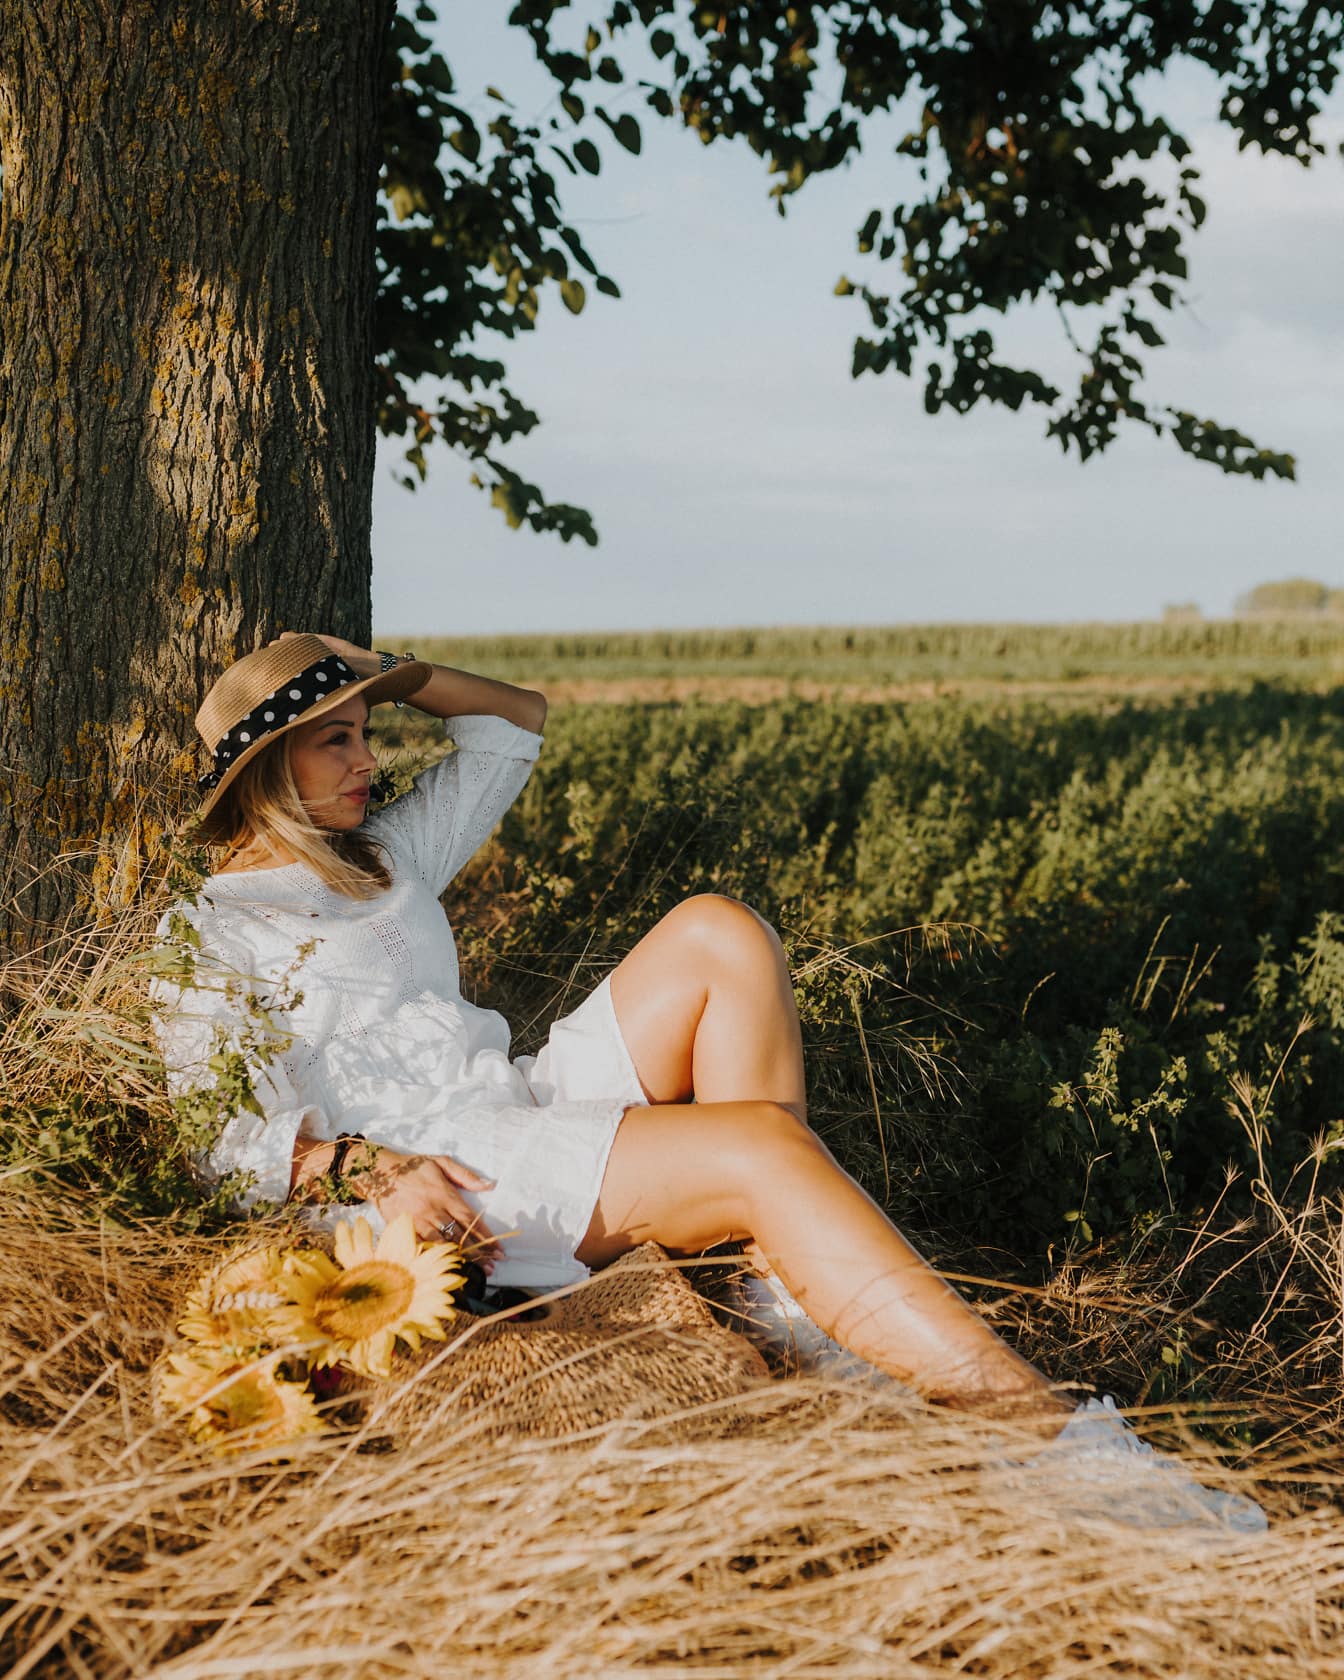 Gadis pedesaan dengan gaun putih dan topi jerami duduk di ladang pertanian di bawah pohon